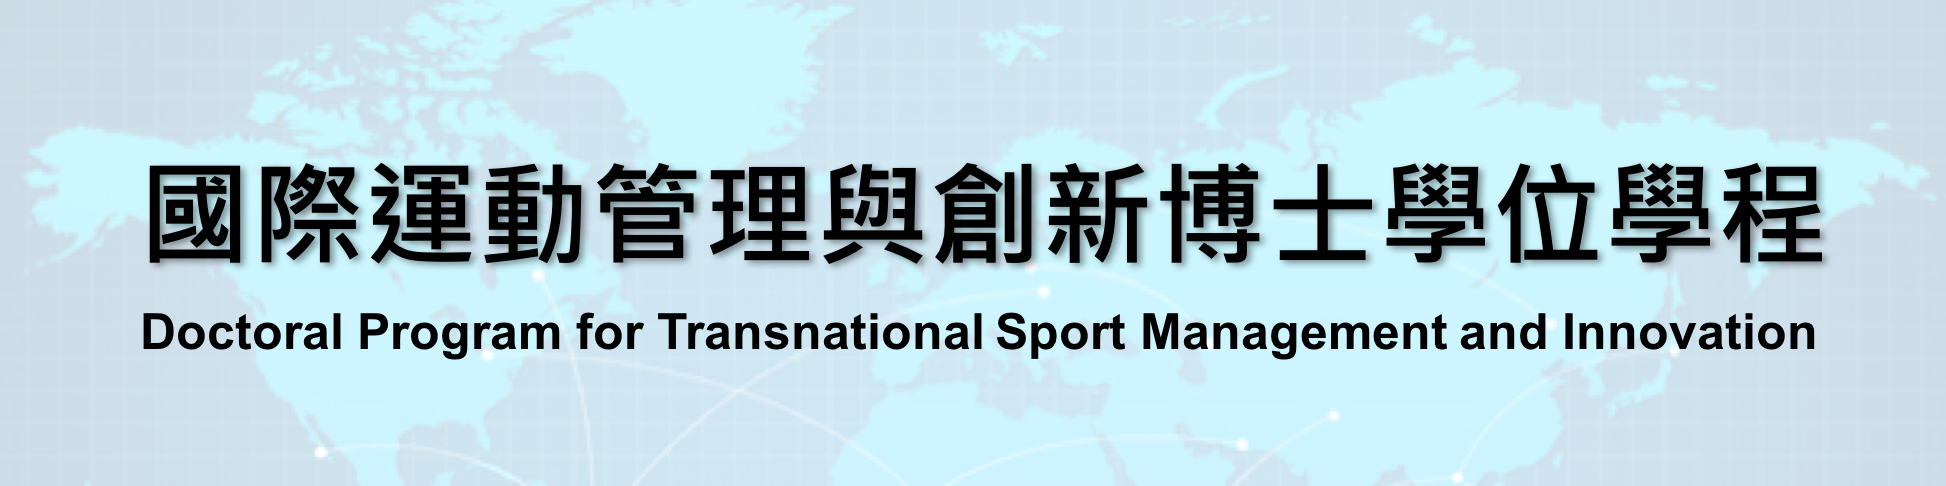 國立體育大學-國際運動管理與創新博士學位學程